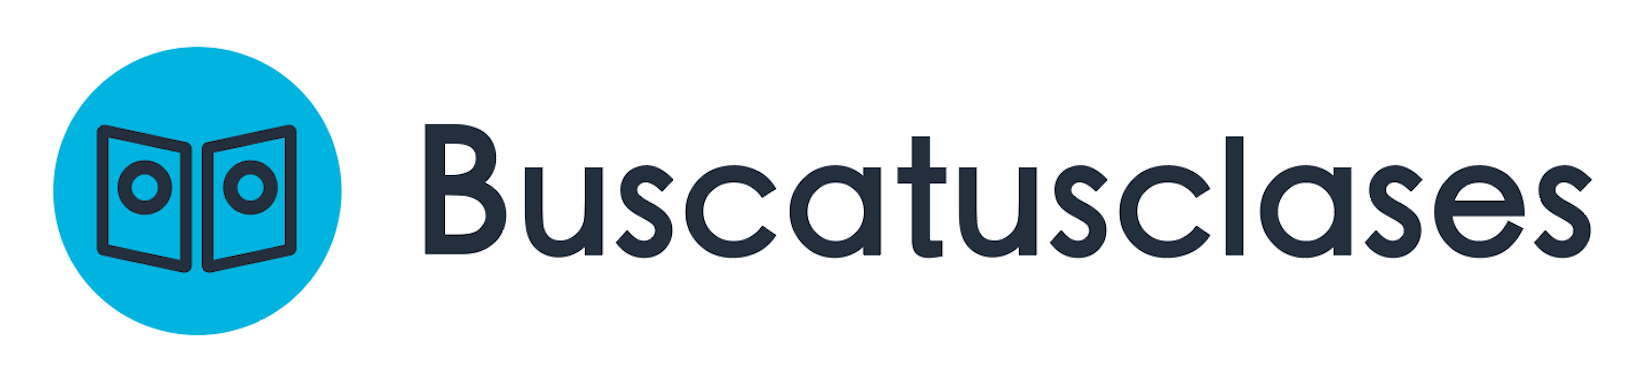 Logotipo Buscatusclases